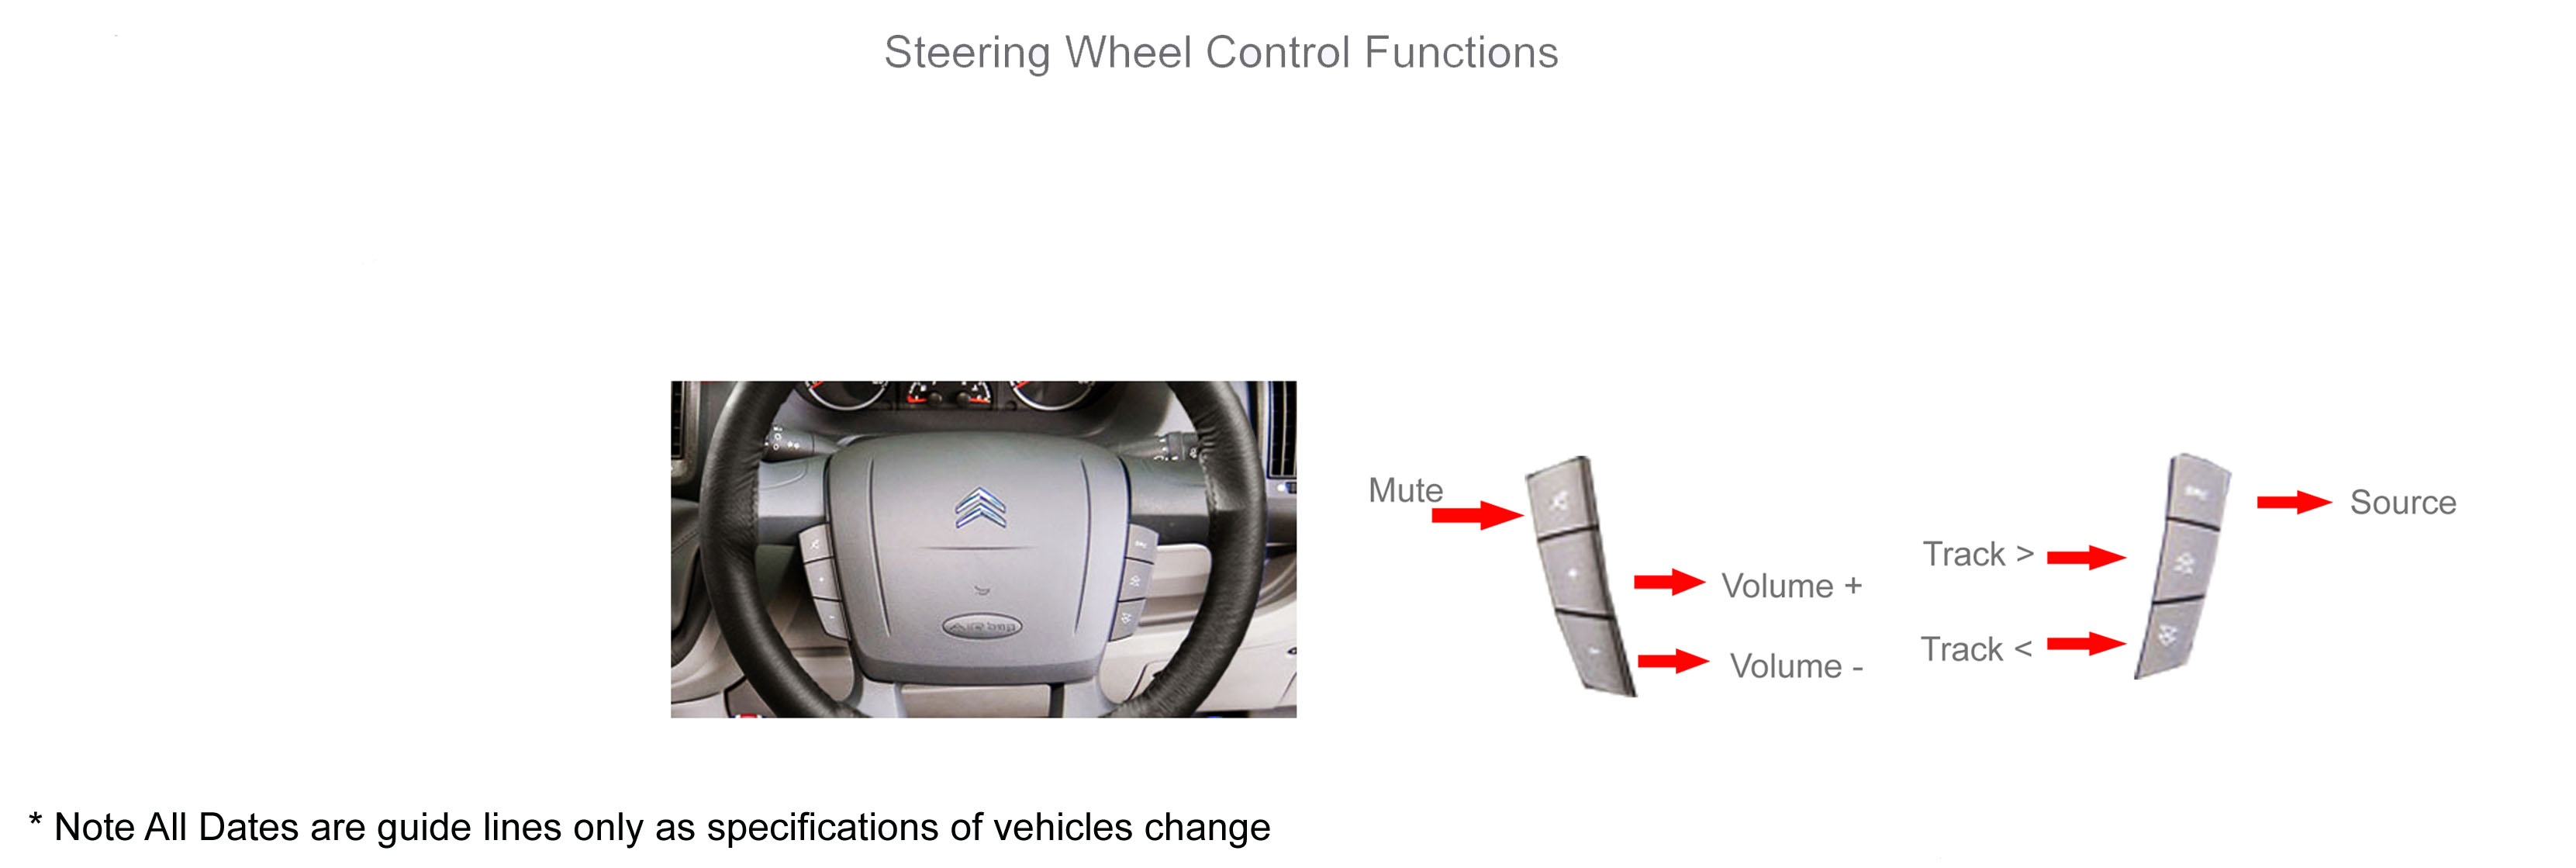 Инструкция поможет сохранить управление магнитолой на руле при замене штатной магнитолы